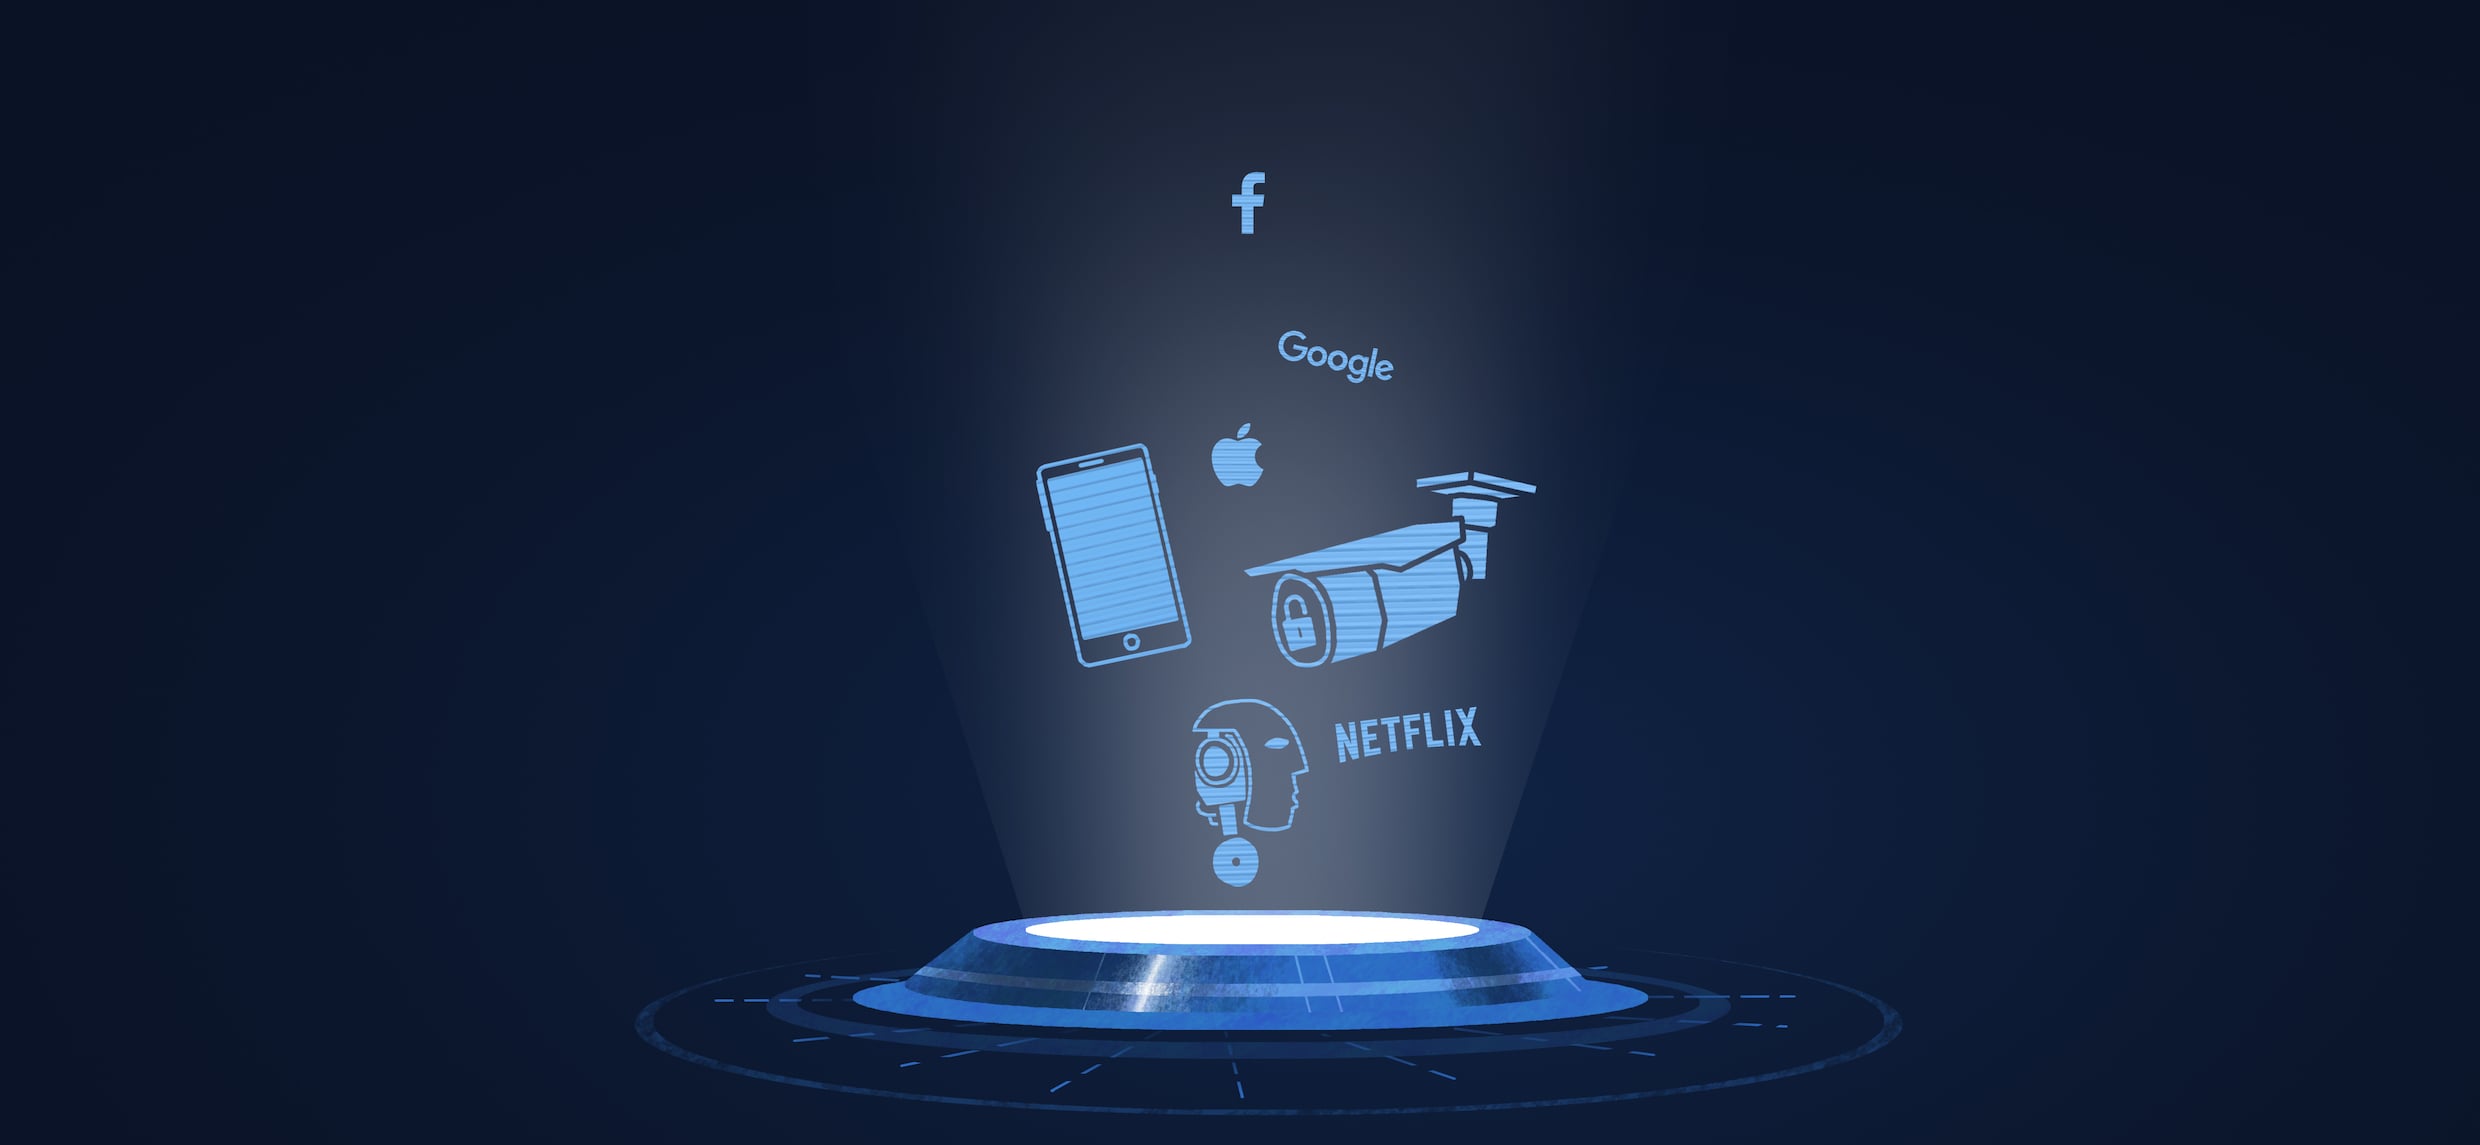 Techblog – Komst eigen cryptomunt Facebook ‘aanstaande’